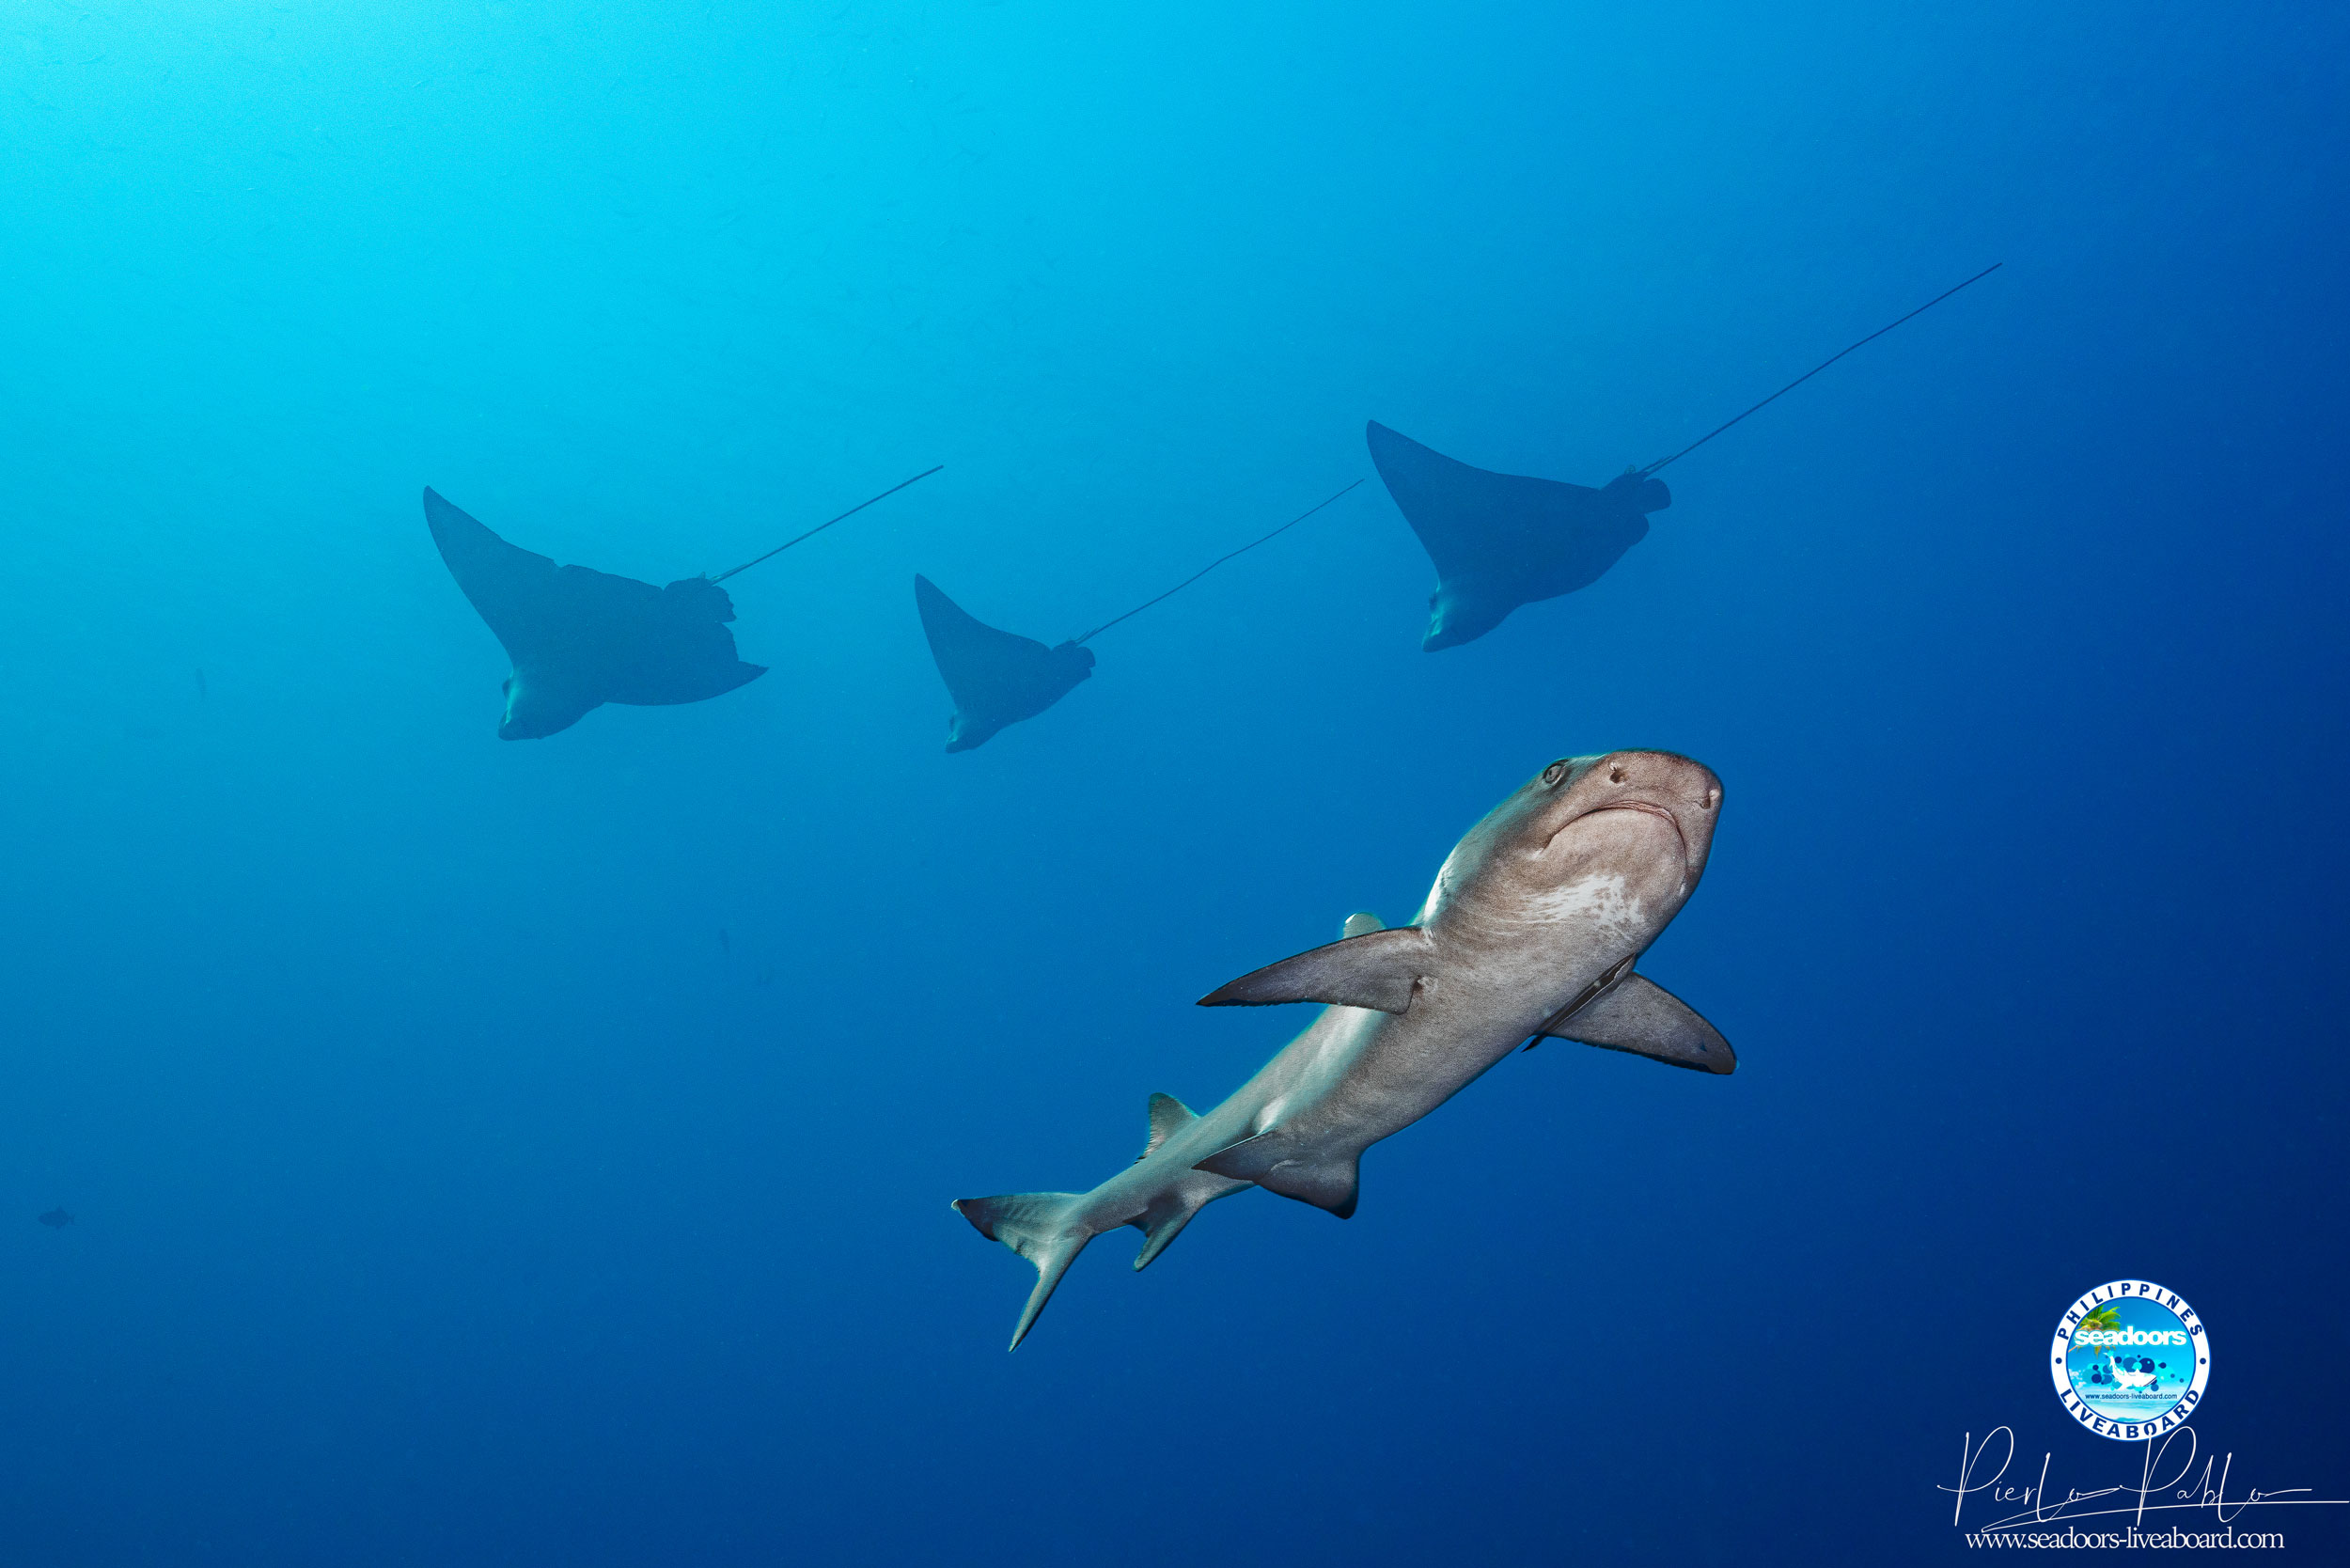 requin seadoors plongee philippines croisiere